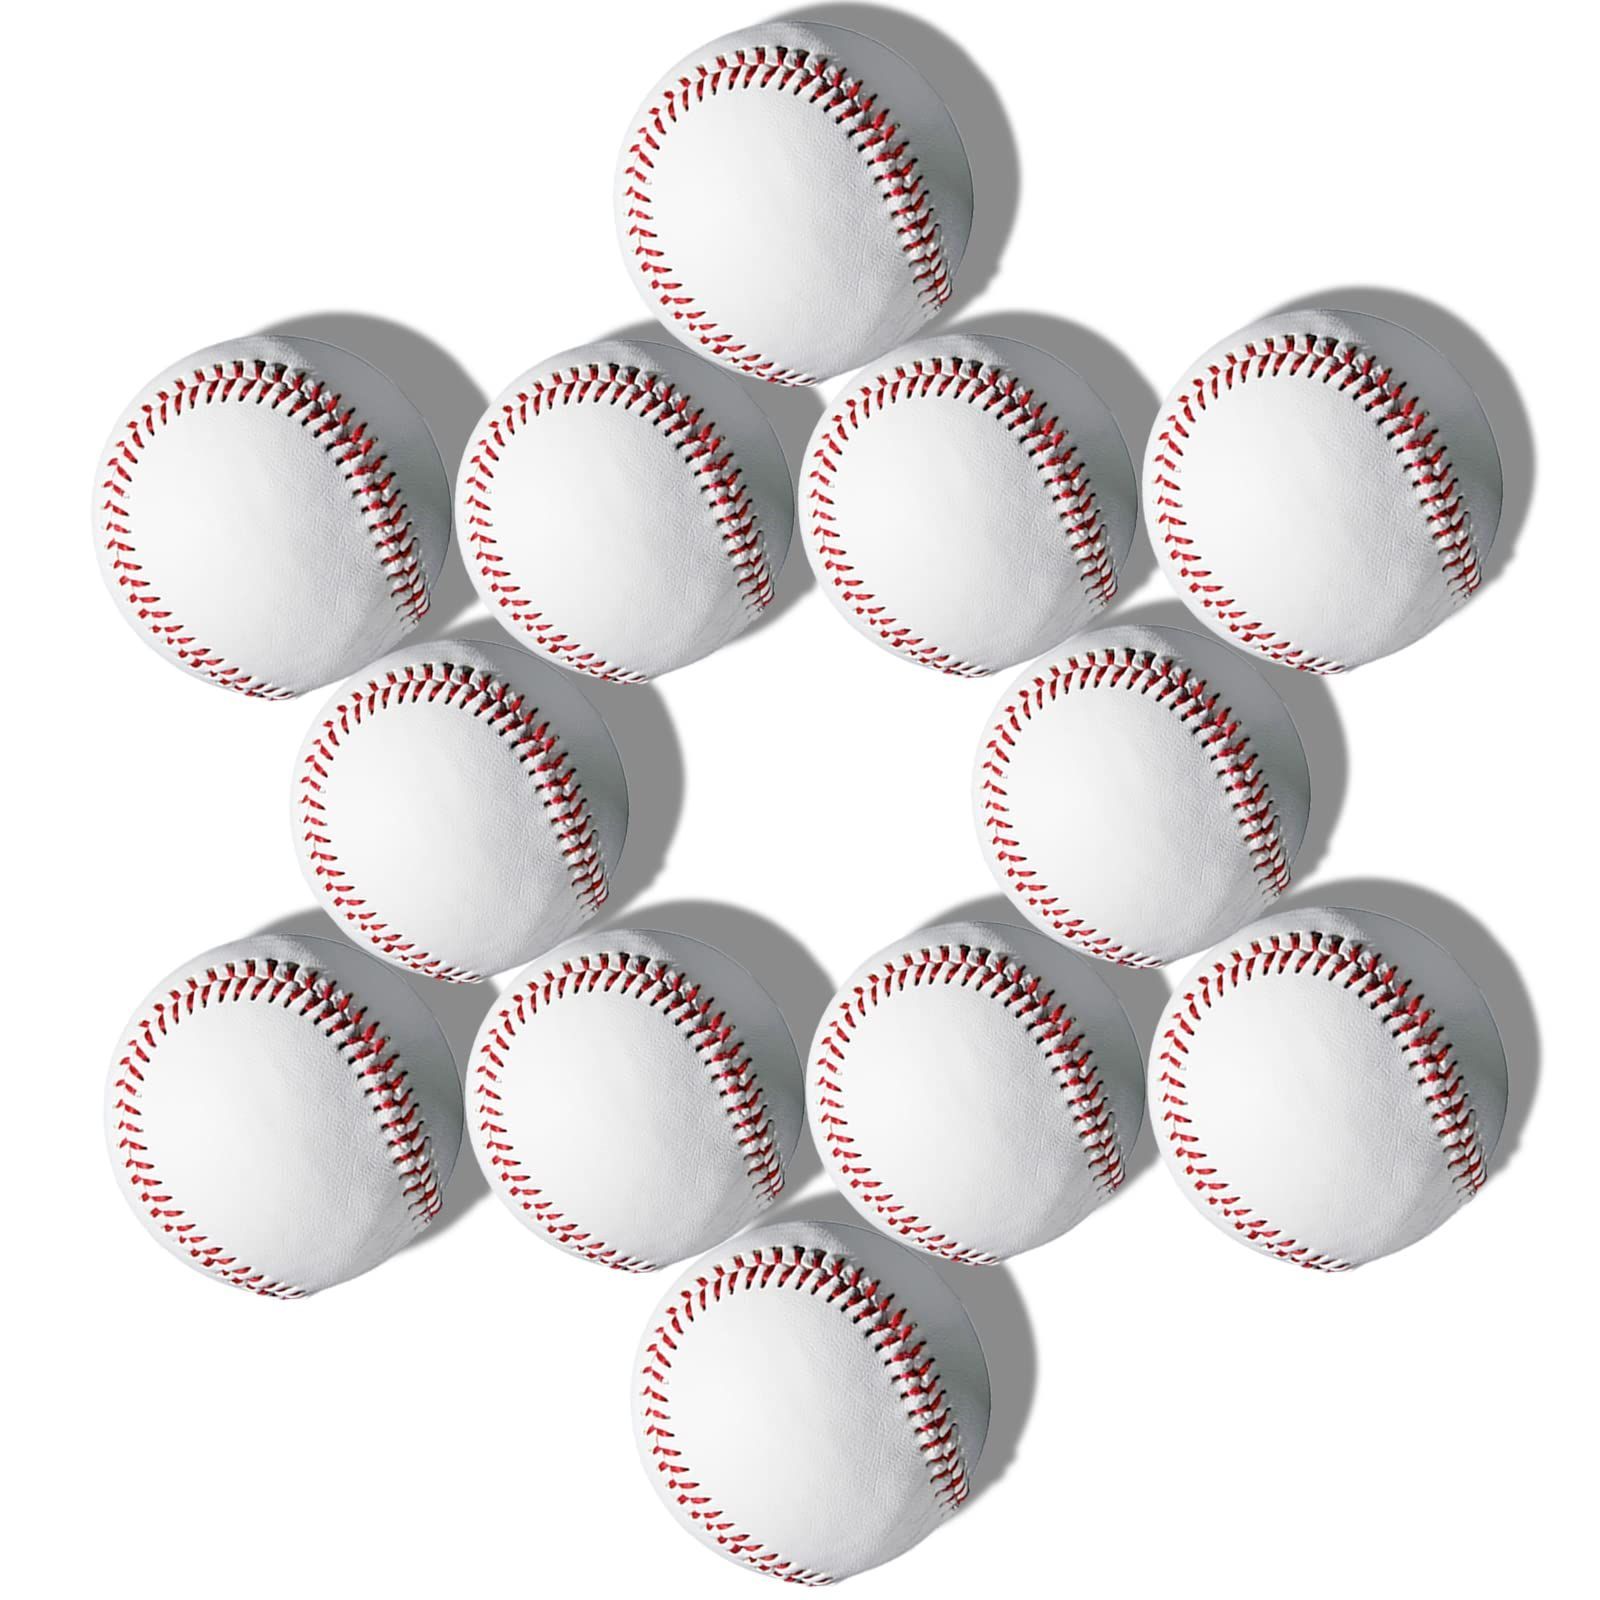 新着商品】YANYODO 野球ボール 硬式野球 練習球 12球入り レーニング